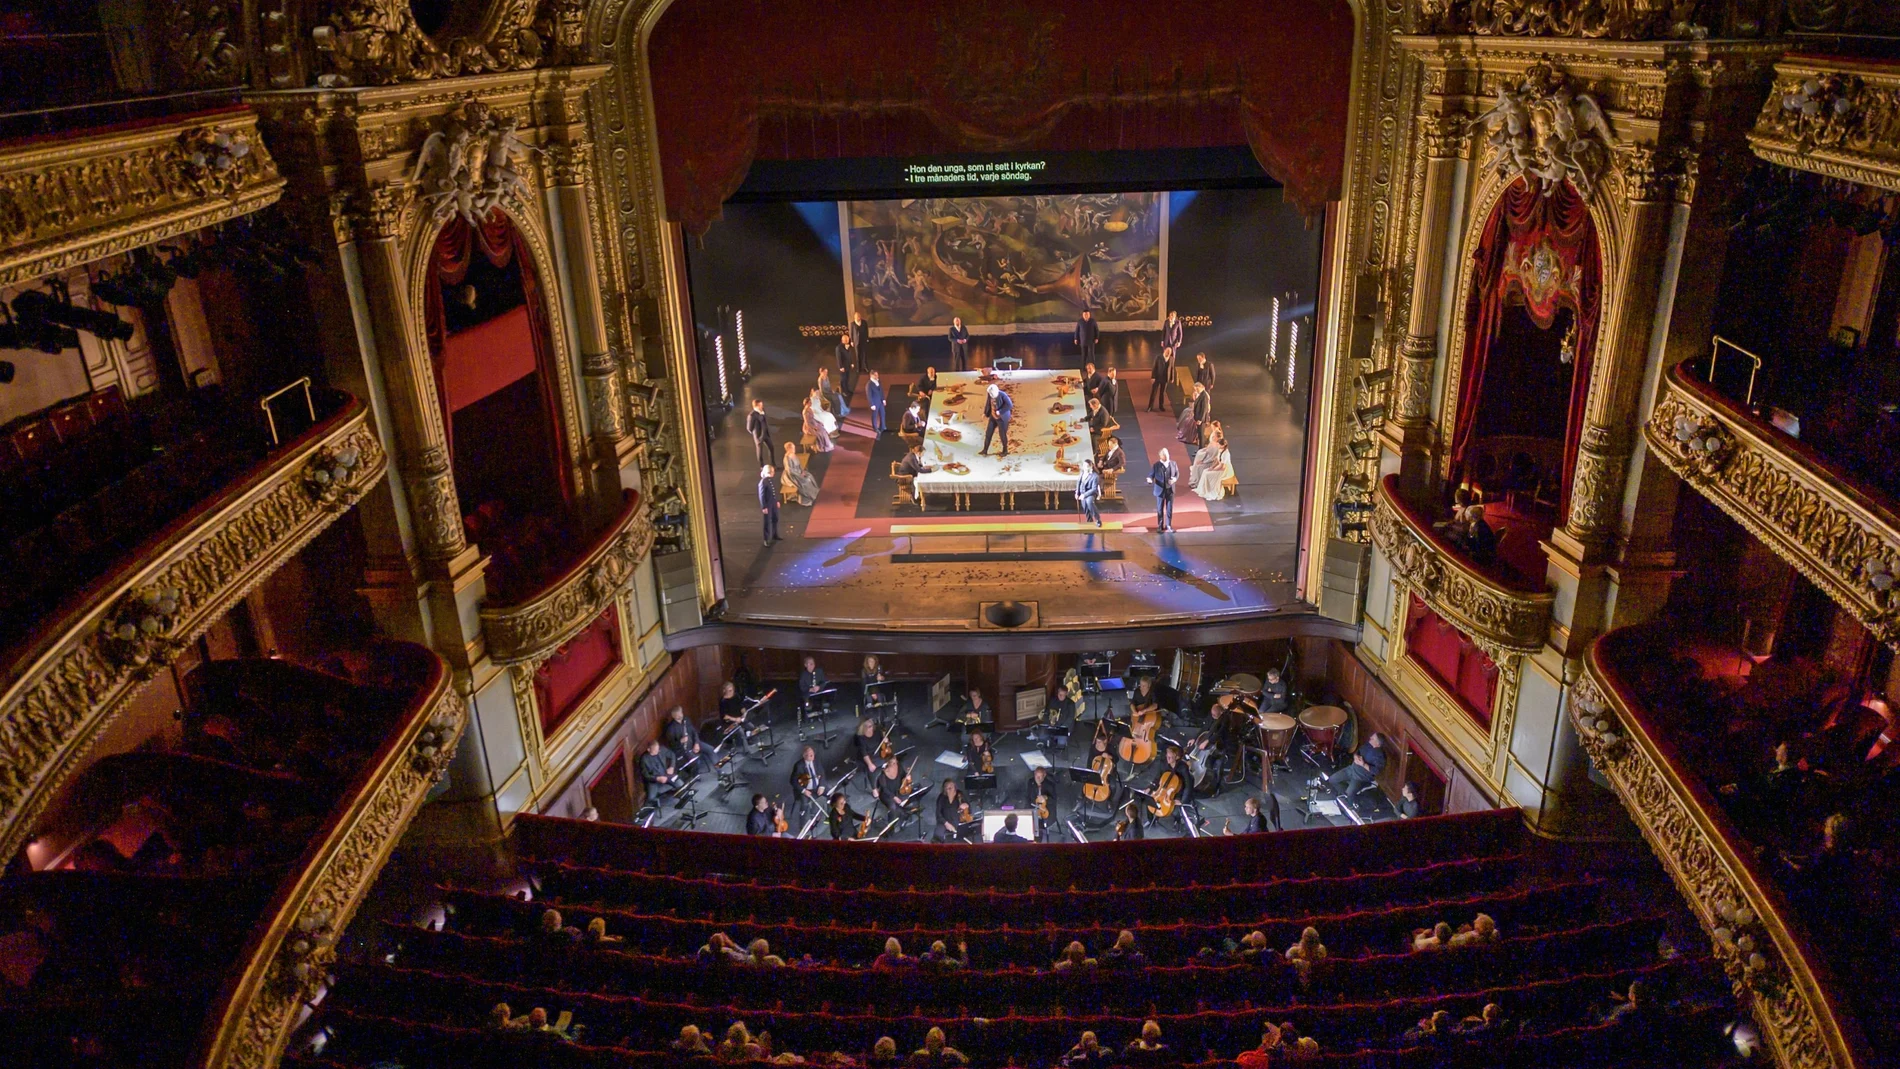 El "Rigoletto" de Verdi adaptado a la distancia social en la Ópera de Estocolmo